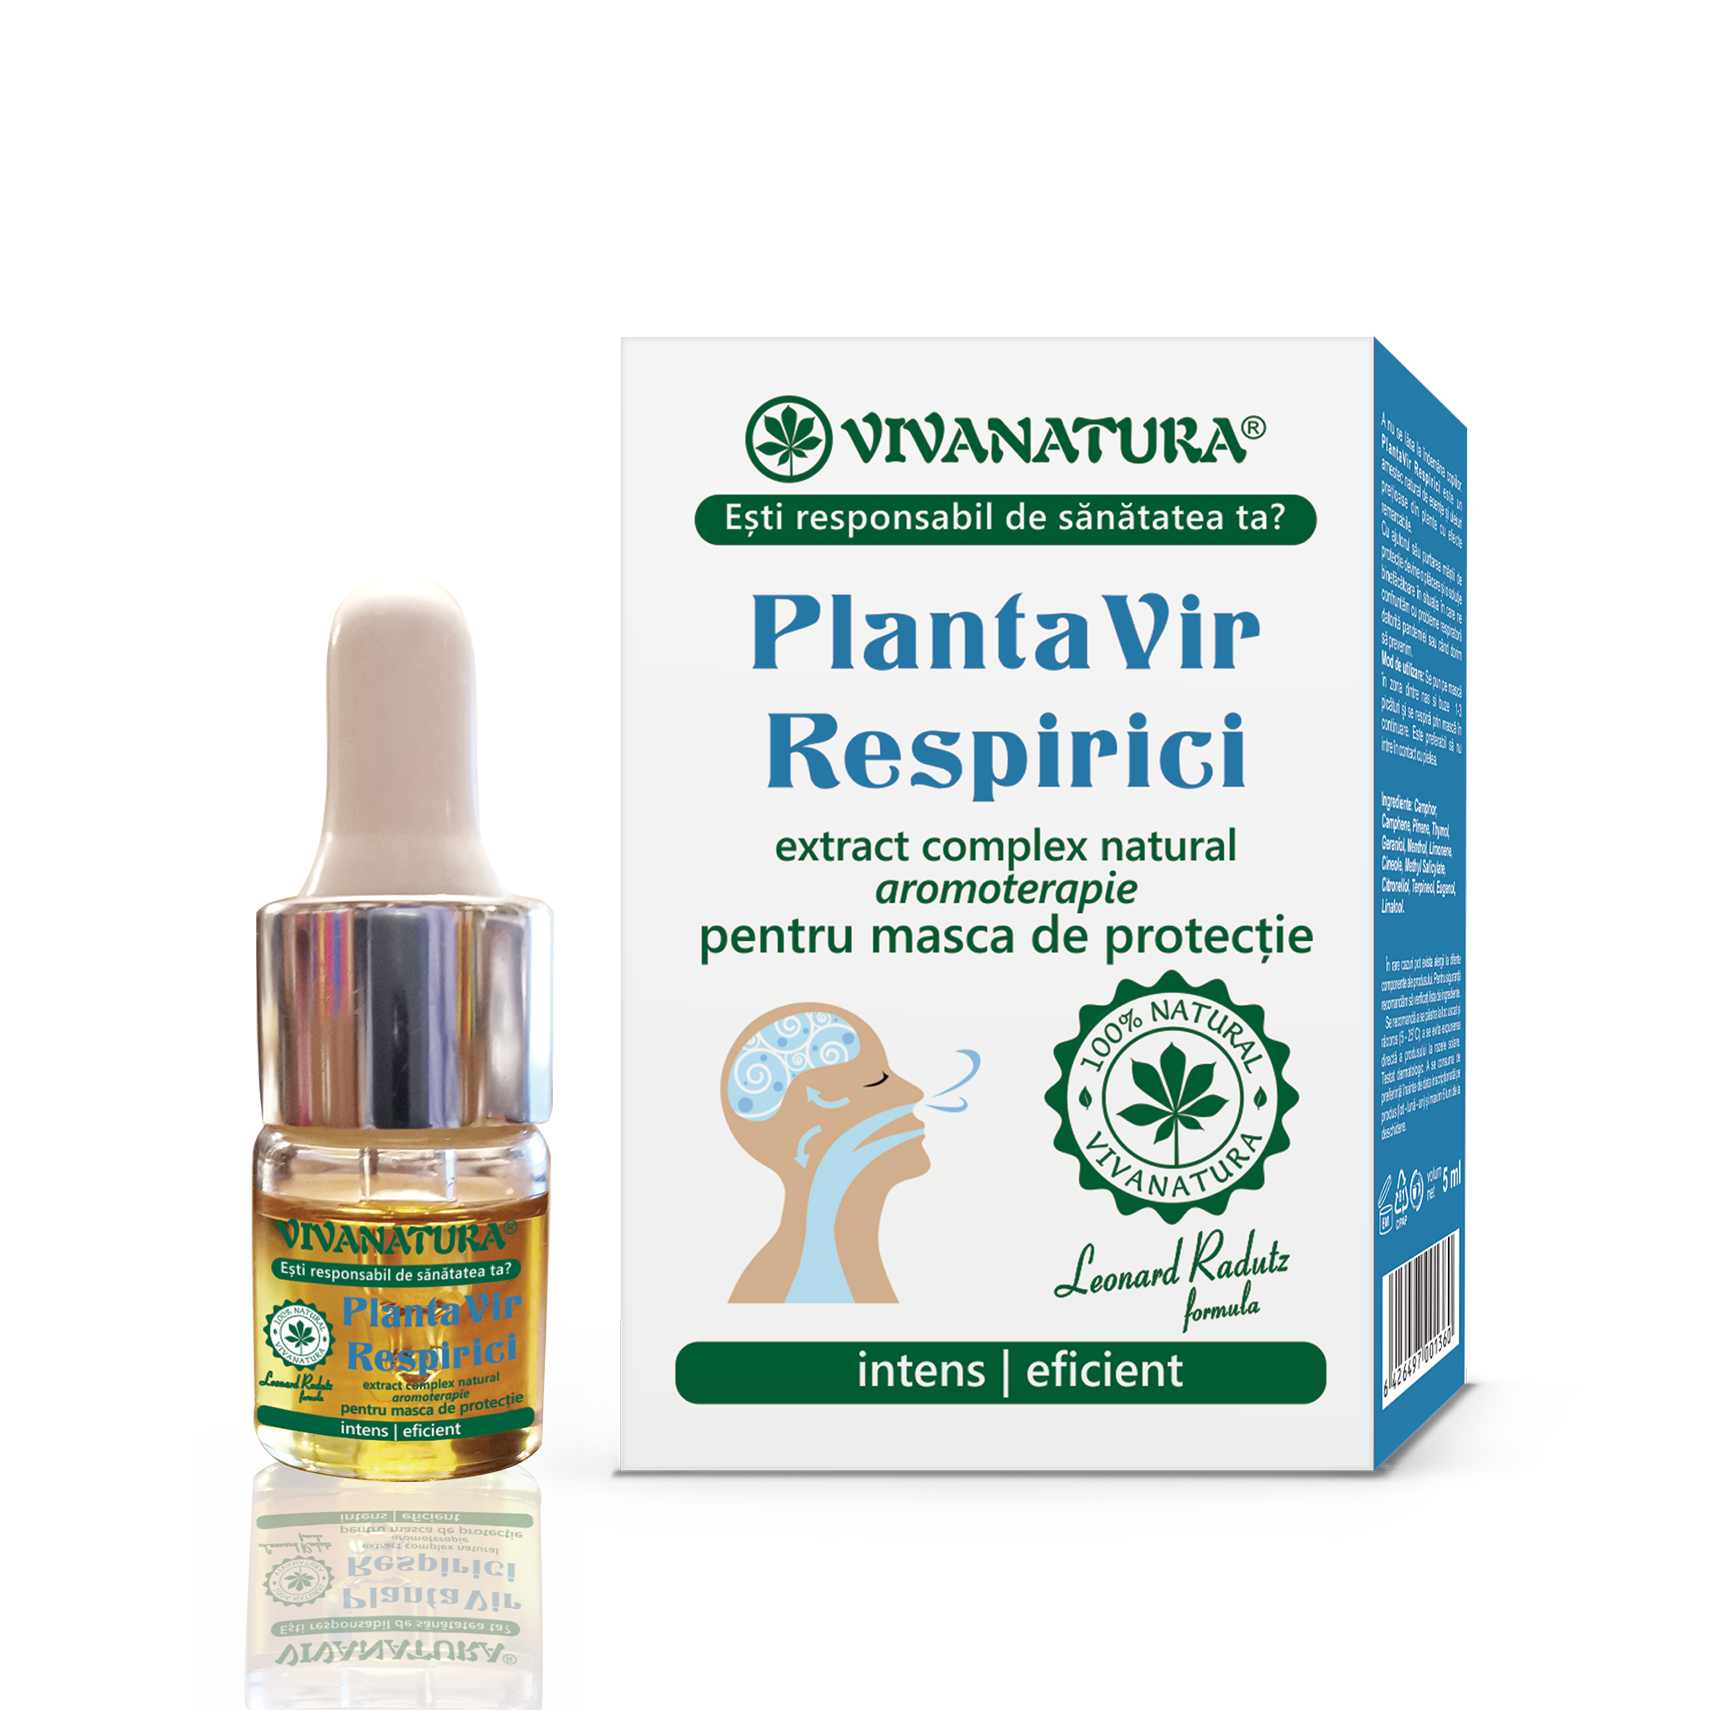 Raceala si gripa - Plantavir respirici extract aromaterapie, 5 ml, VivaNatura, sinapis.ro